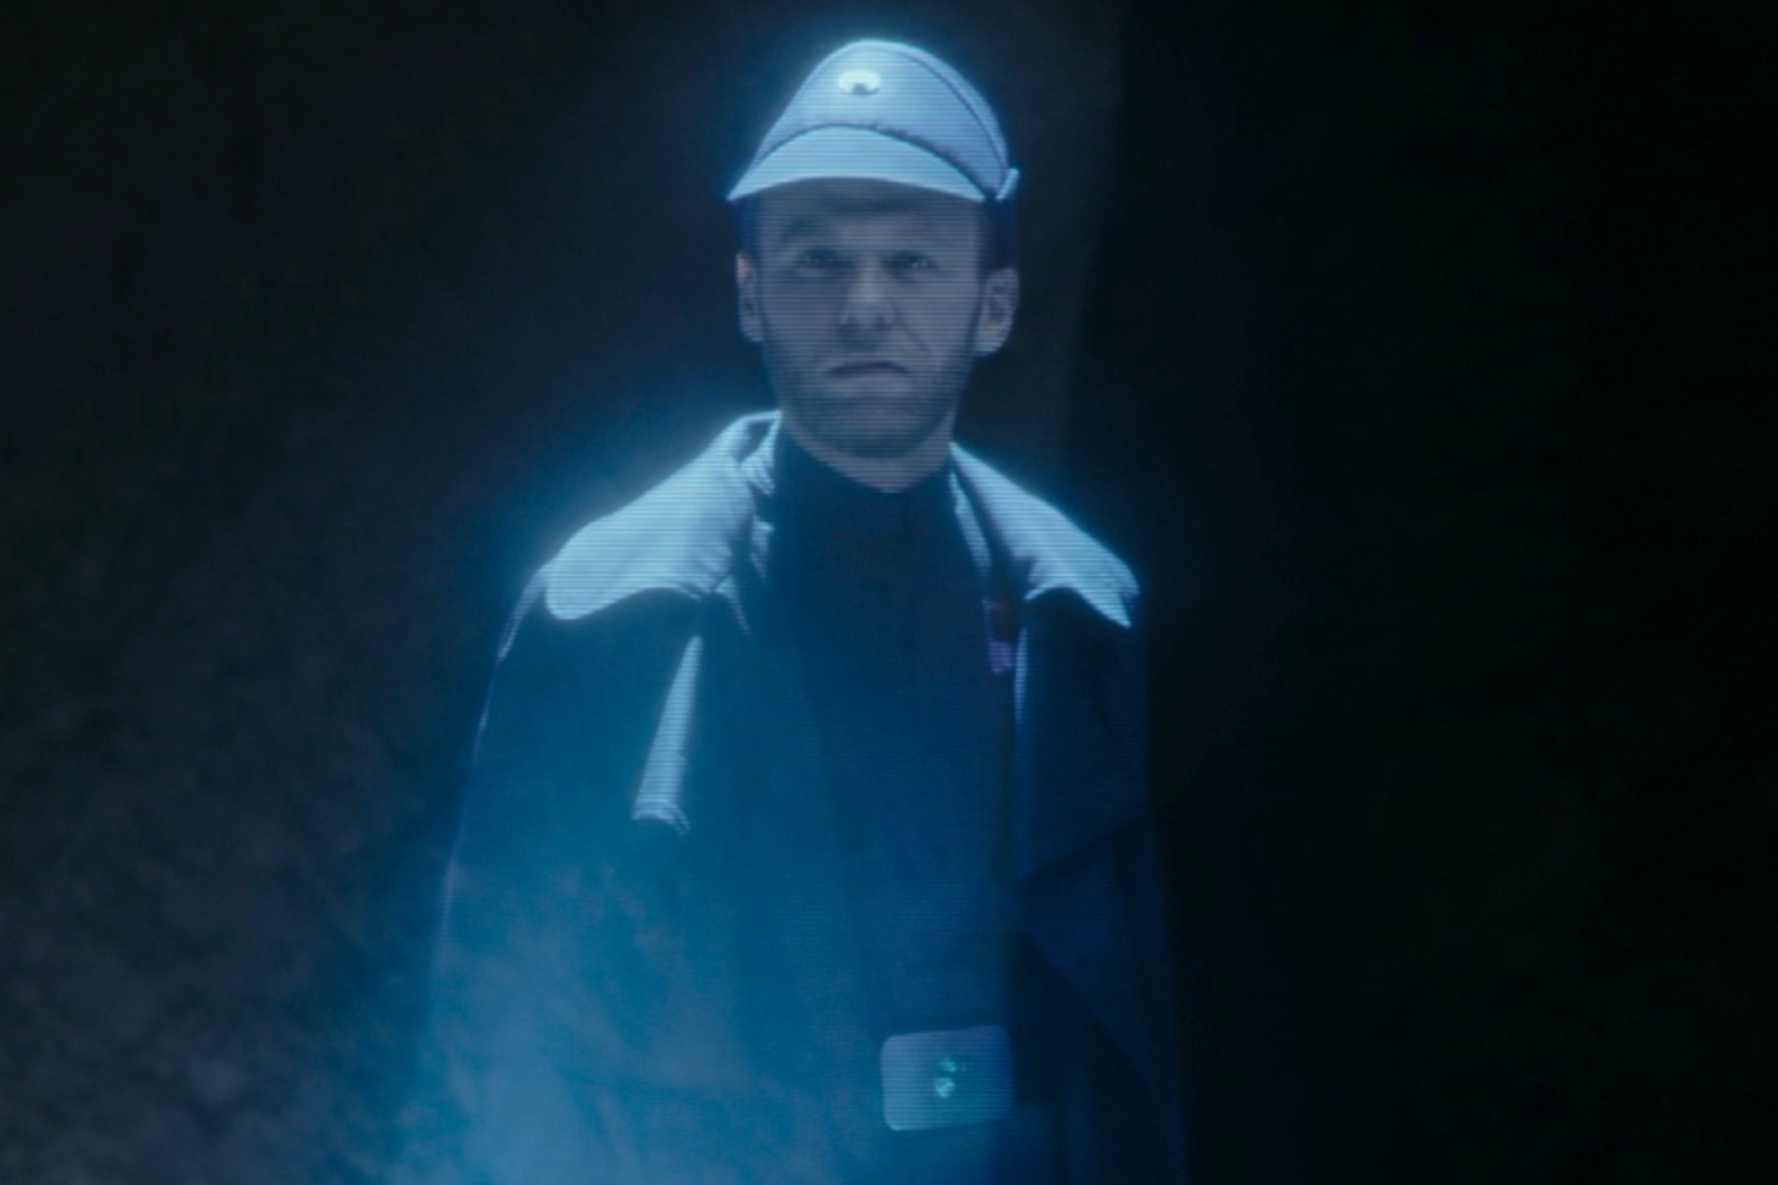 O comandante Hux aparece como um holograma no episódio 7 da 3ª temporada de The Mandalorian.